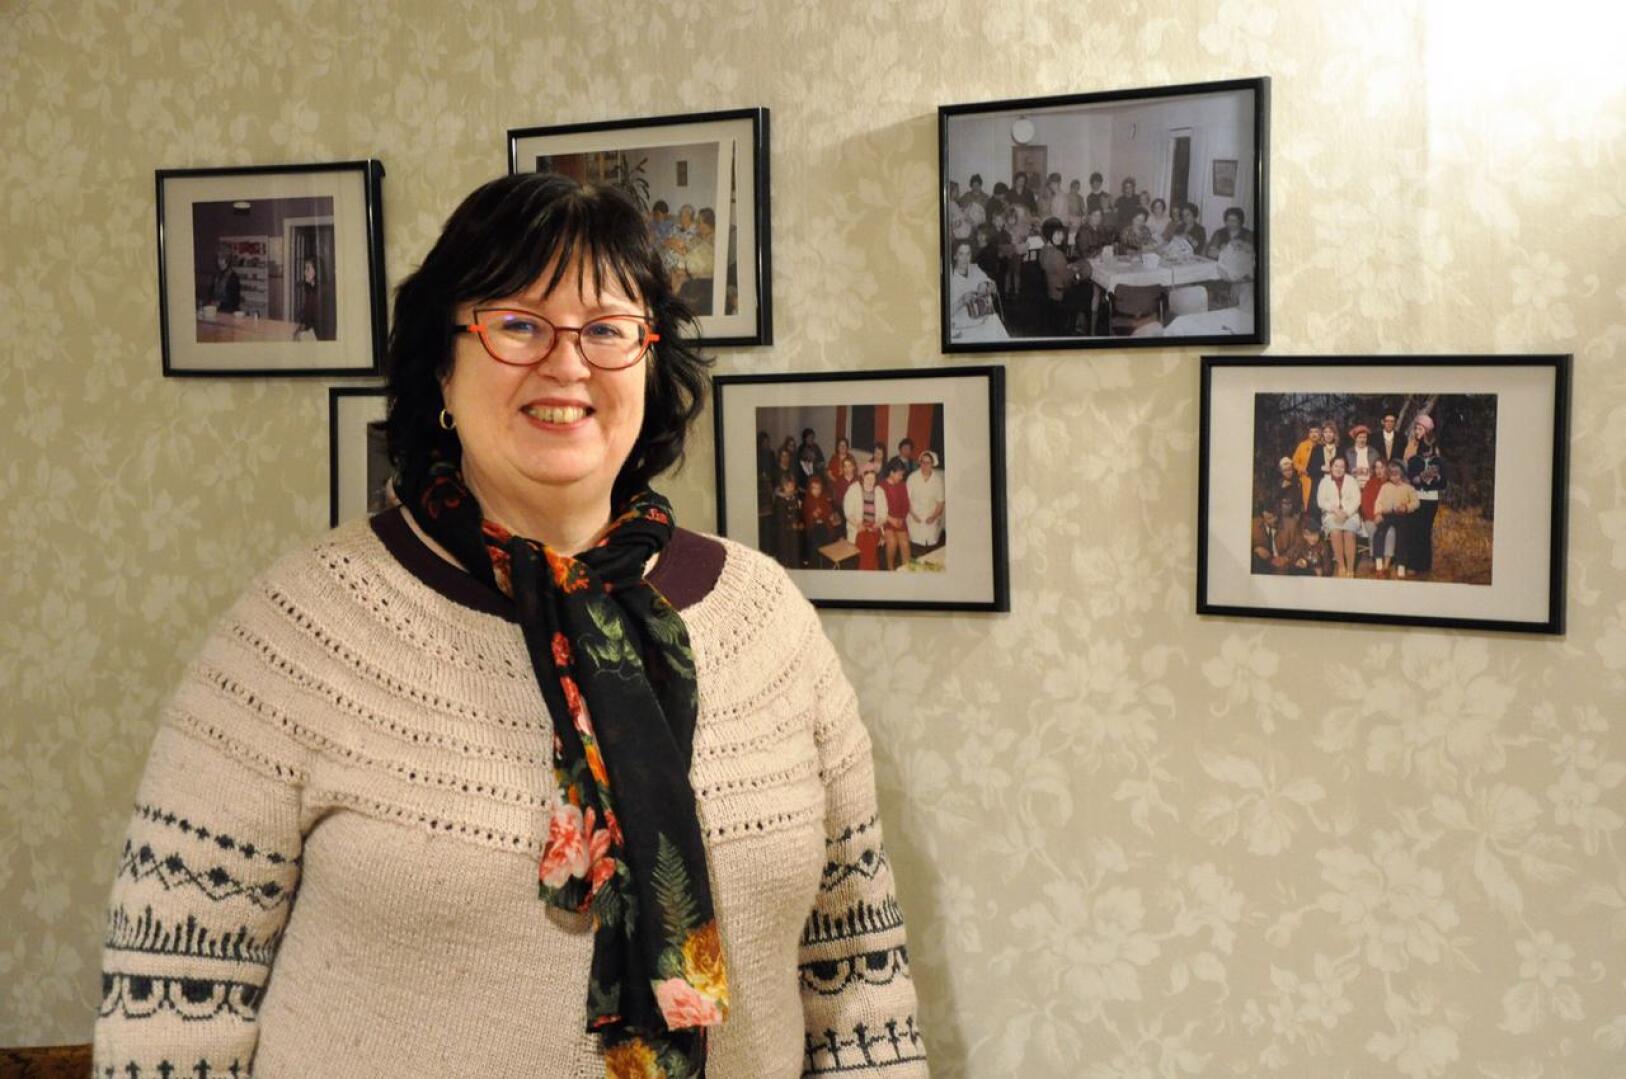 Työväentalon ”akkain huone” valokuvineen on Jaana Pikkarainen-Haapasaarelle tuttu jo lapsuudesta. Naiset ovat talolla kokoontuneet tiistaisin vuosikymmenten ajan.